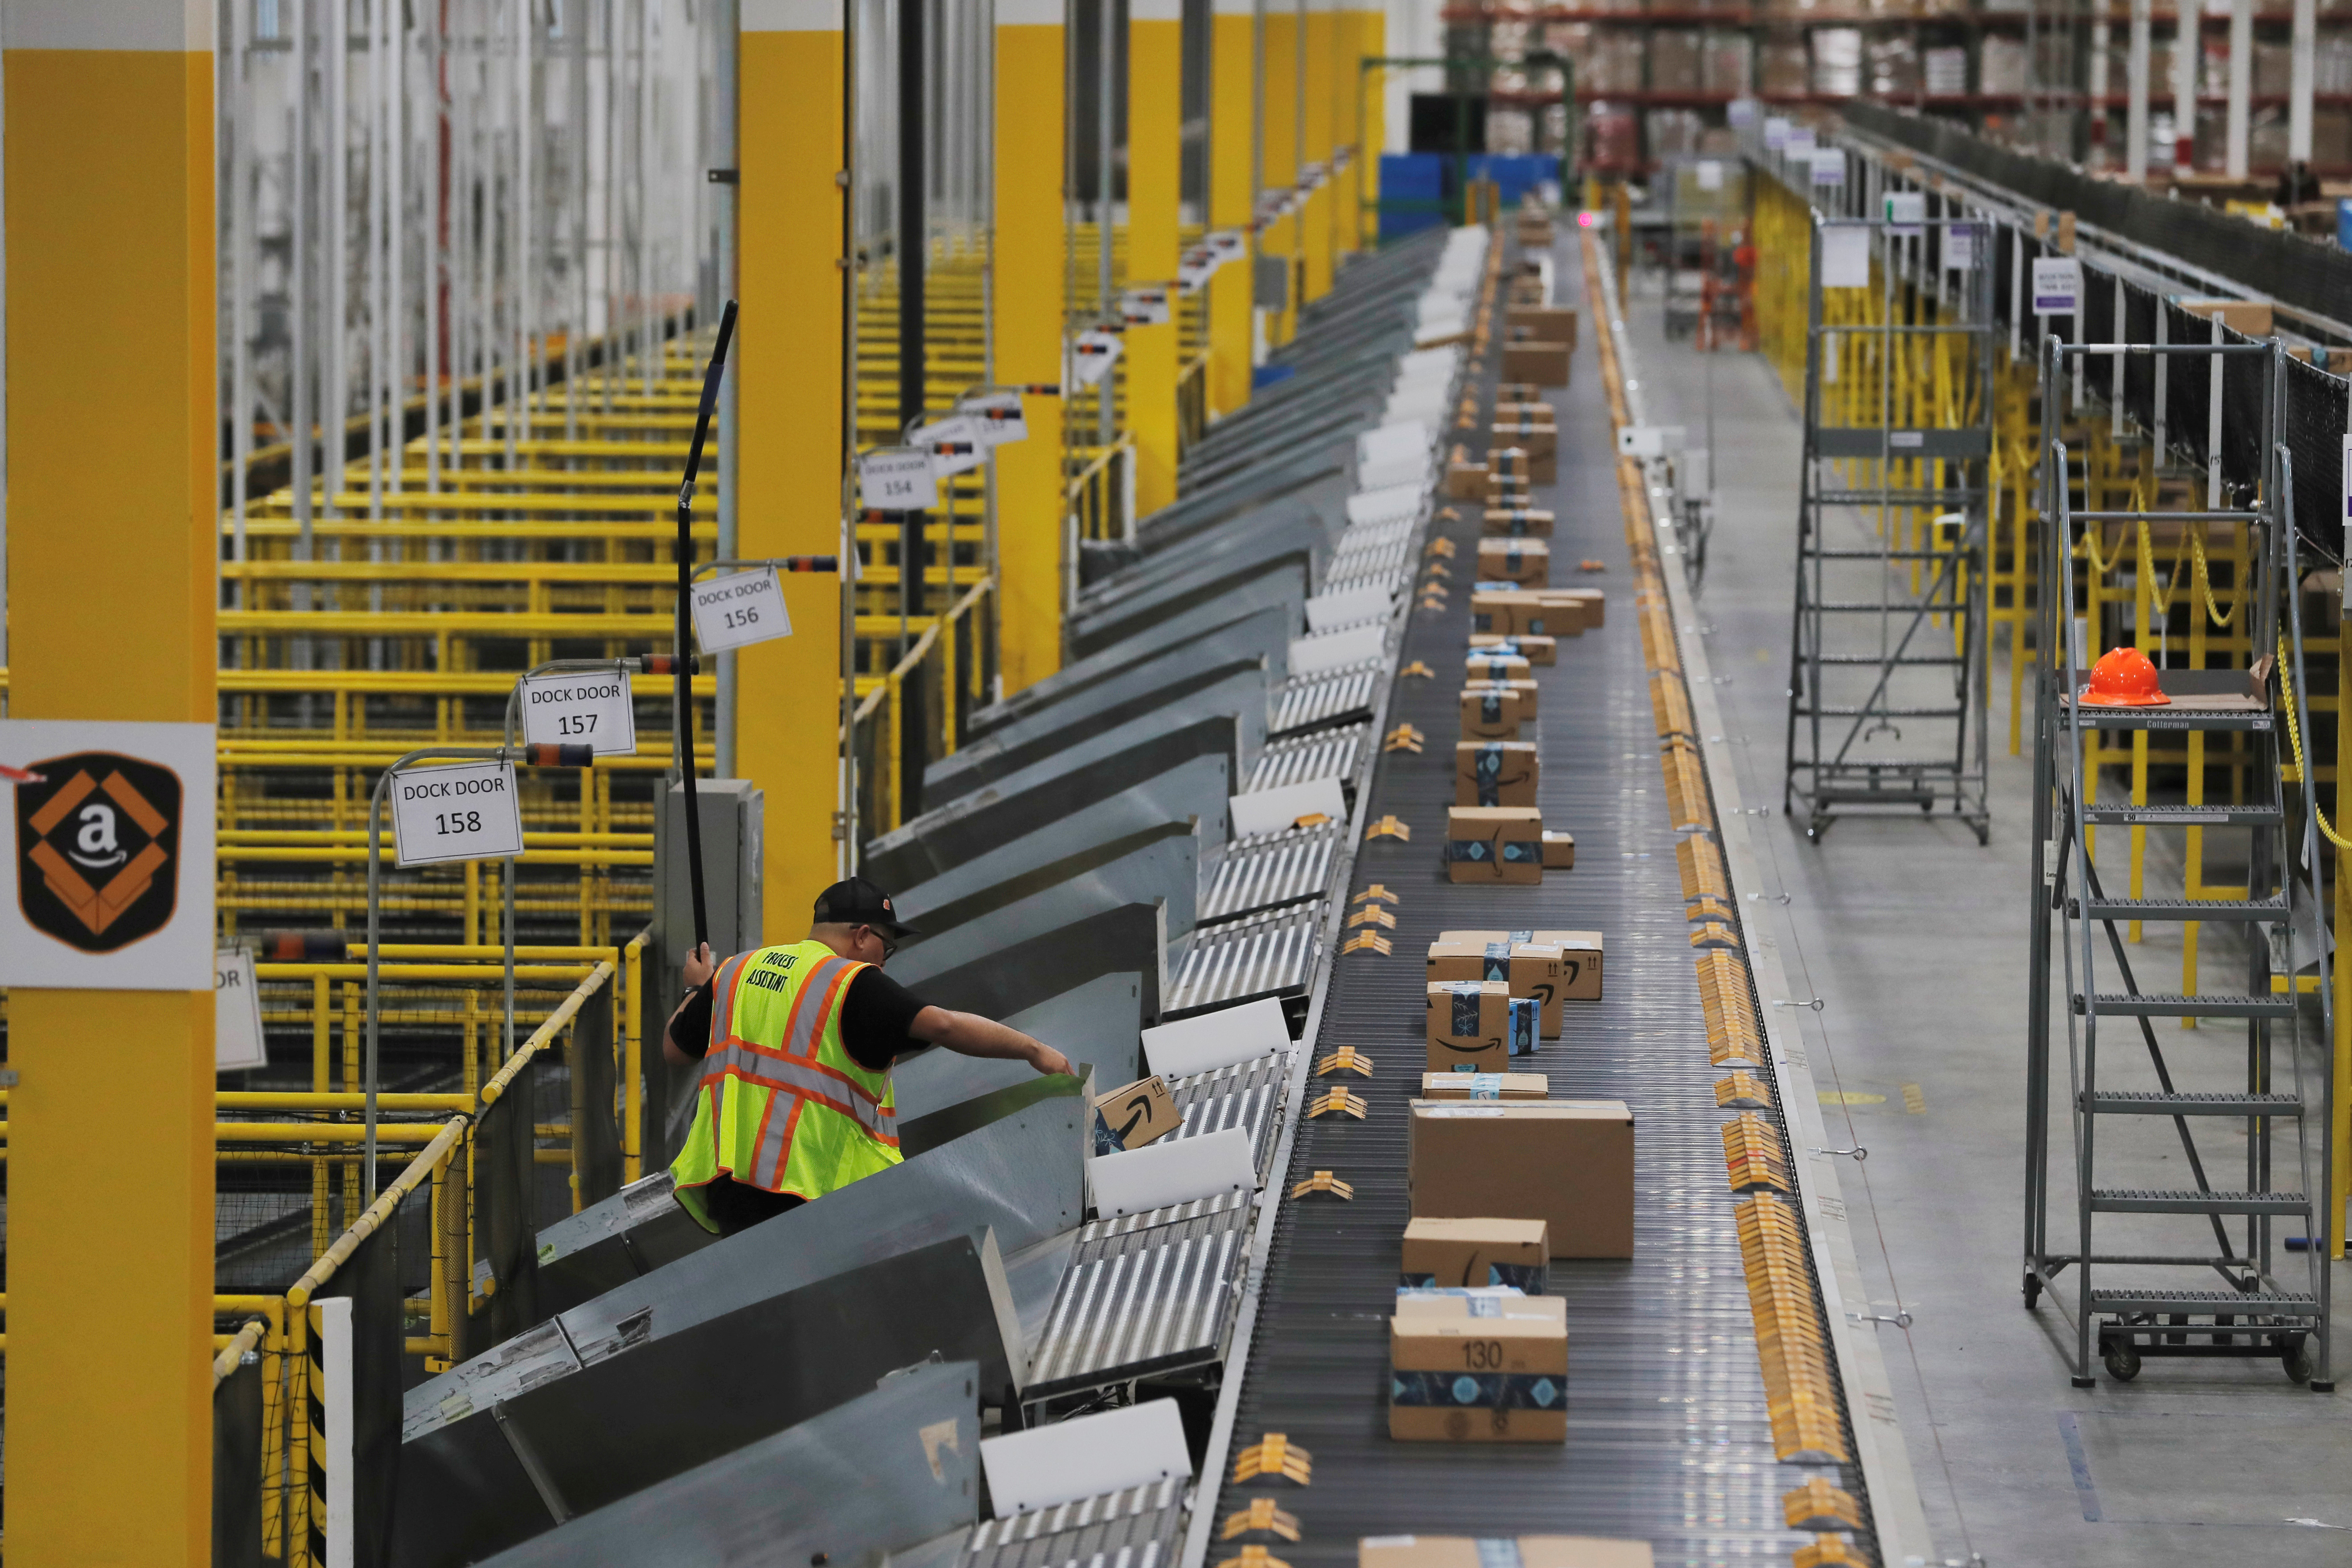 Un centro de distribución de Amazon, procesando envíos
REUTERS/Lucas Jackson/File Photo